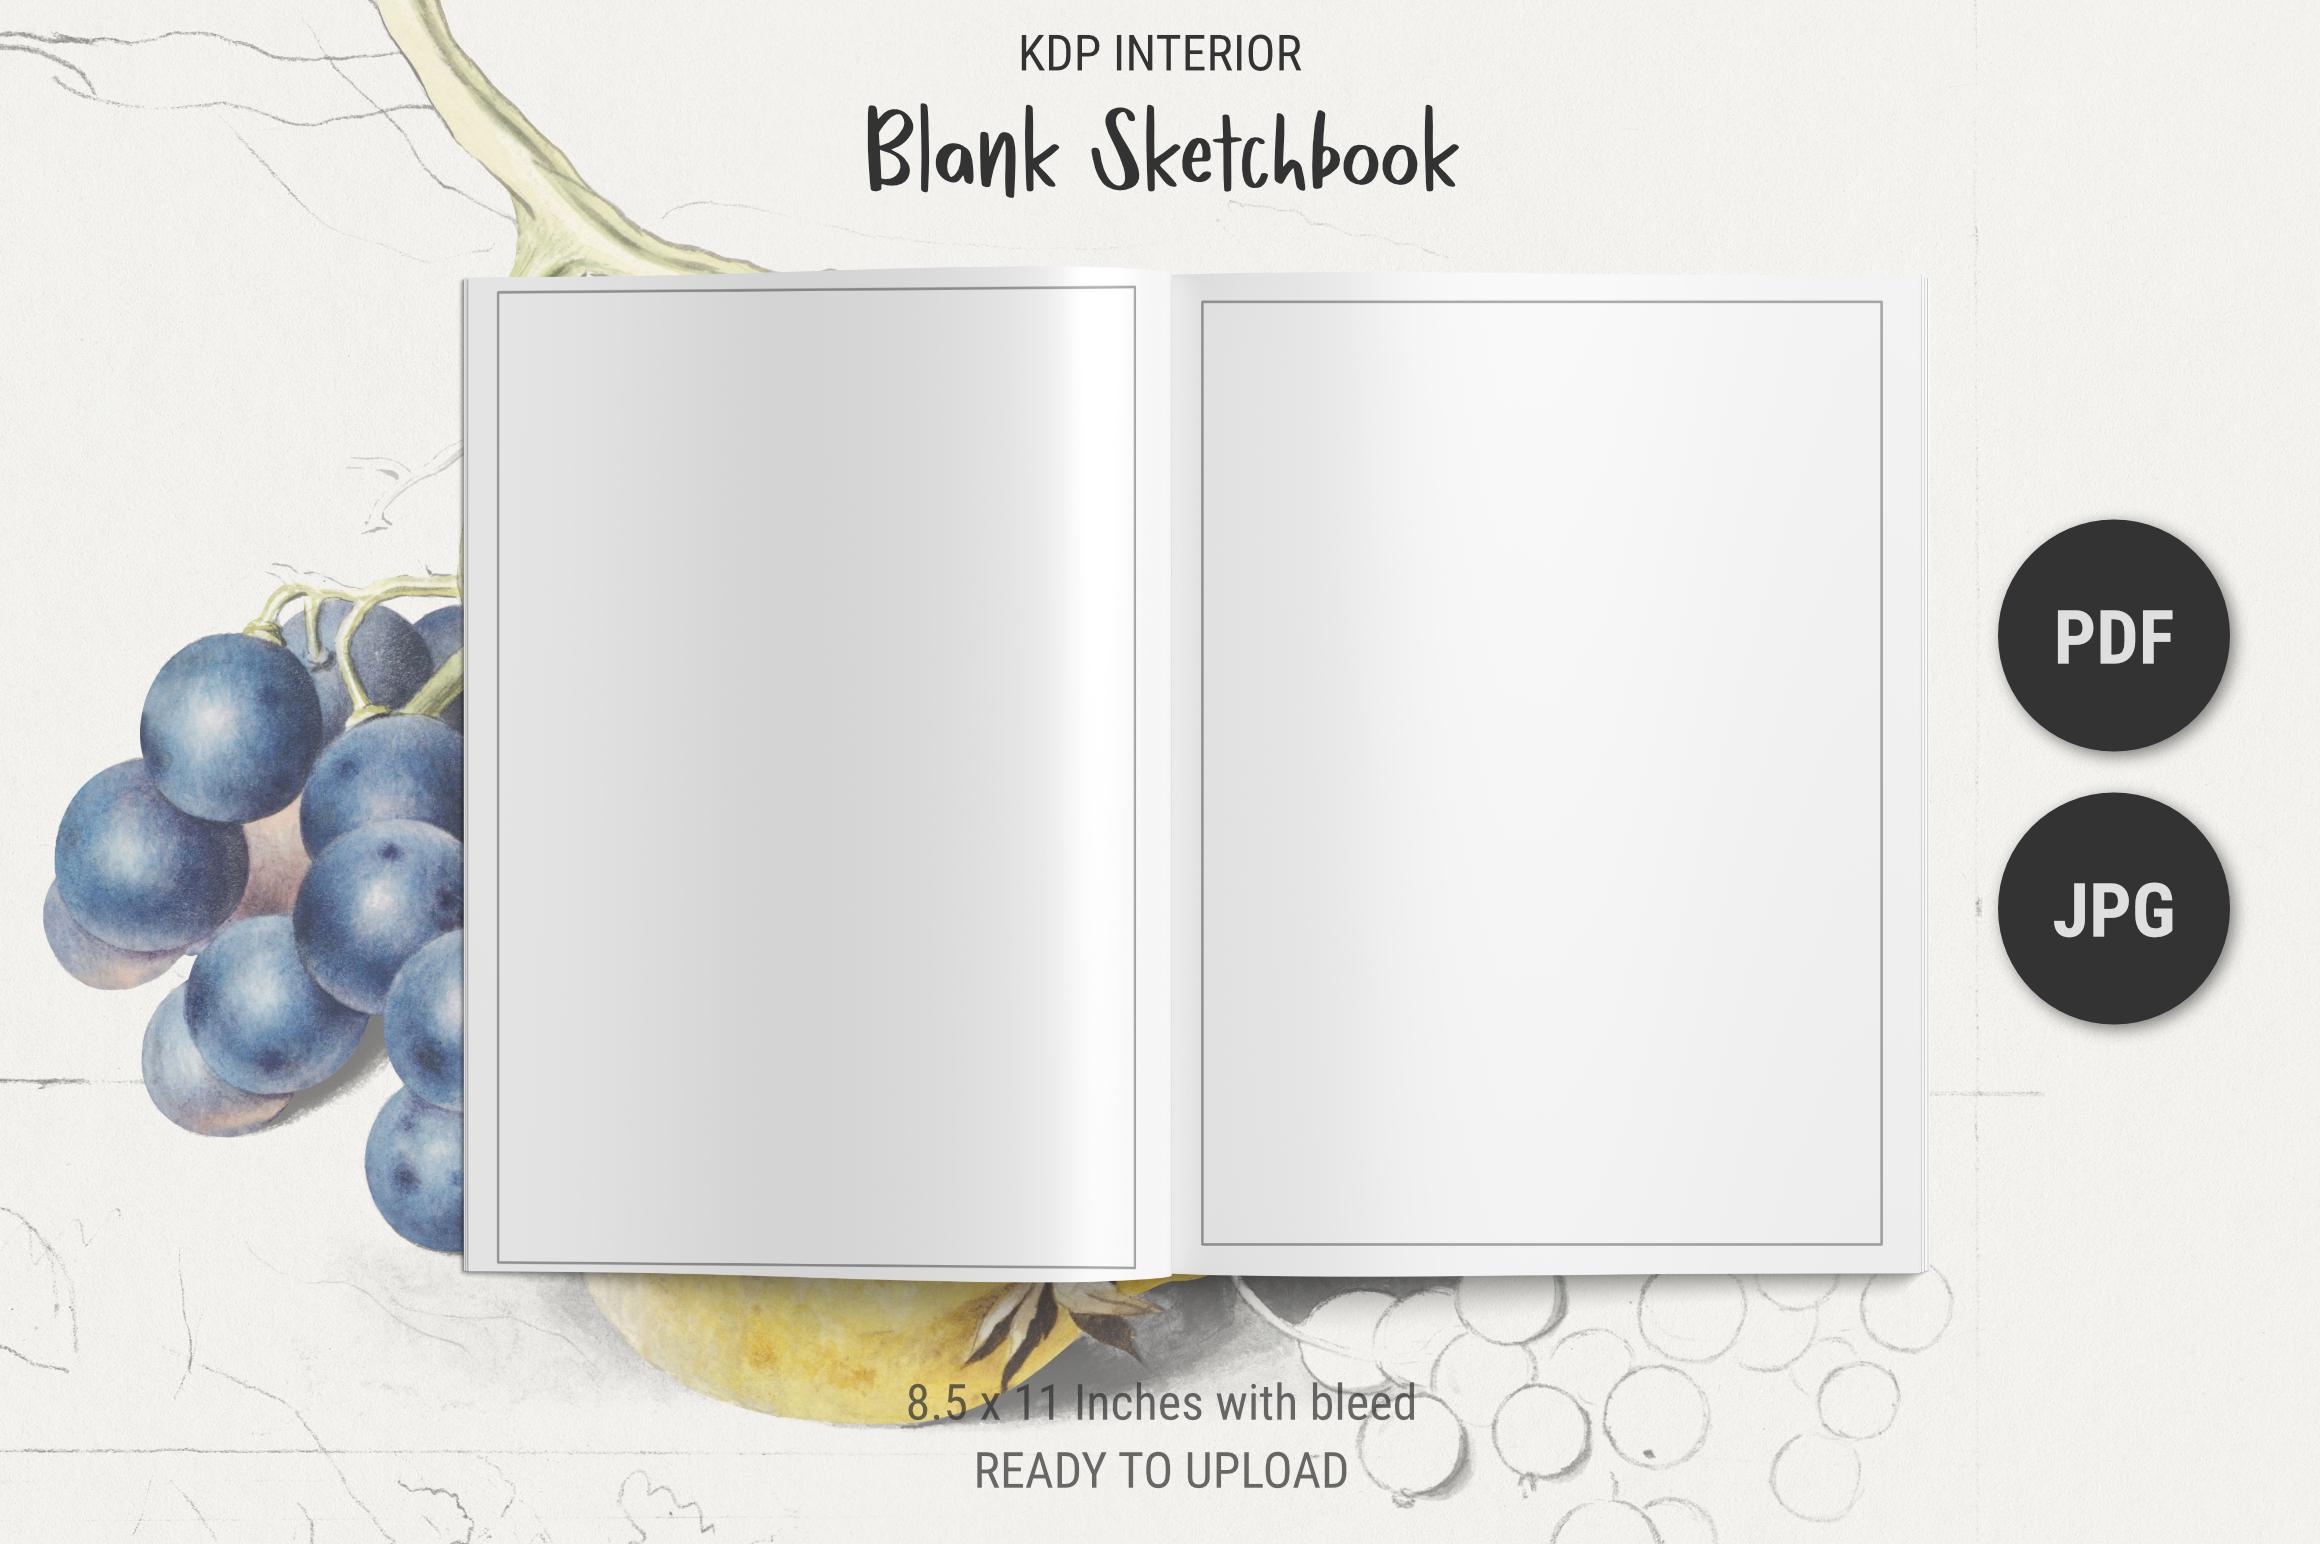 KDP Blank Sketchbook Interior